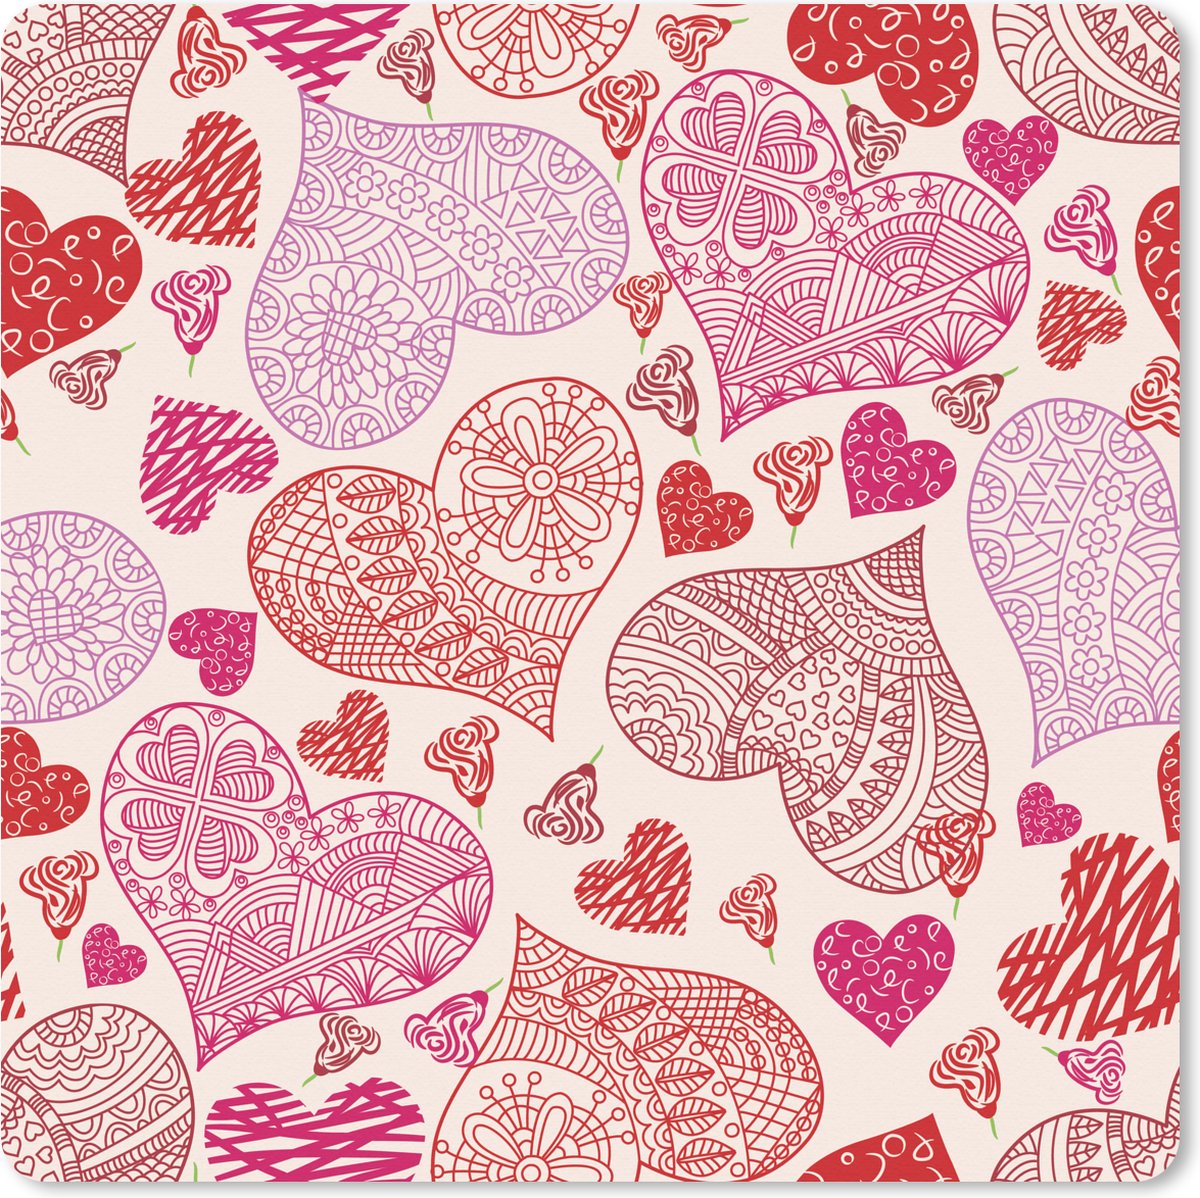 Muismat XXL - Bureau onderlegger - Bureau mat - Een tekening met roze en rode hartjes - 60x60 cm - XXL muismat